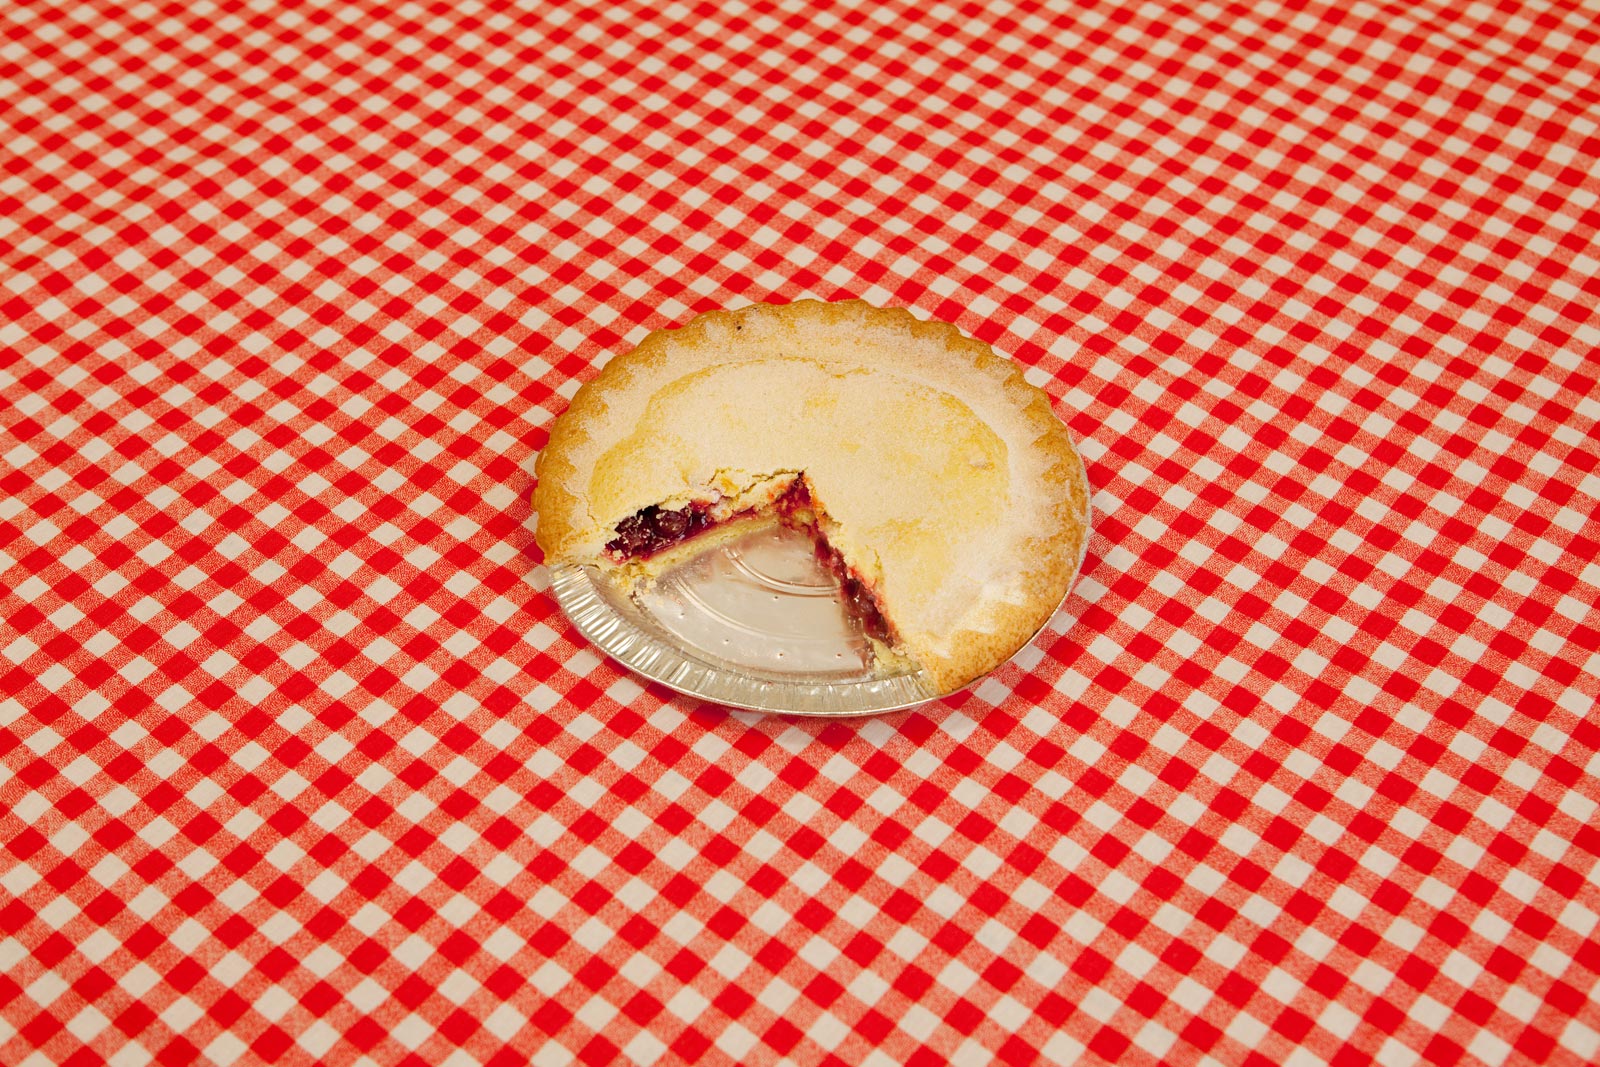 Cherry Pie, 2009